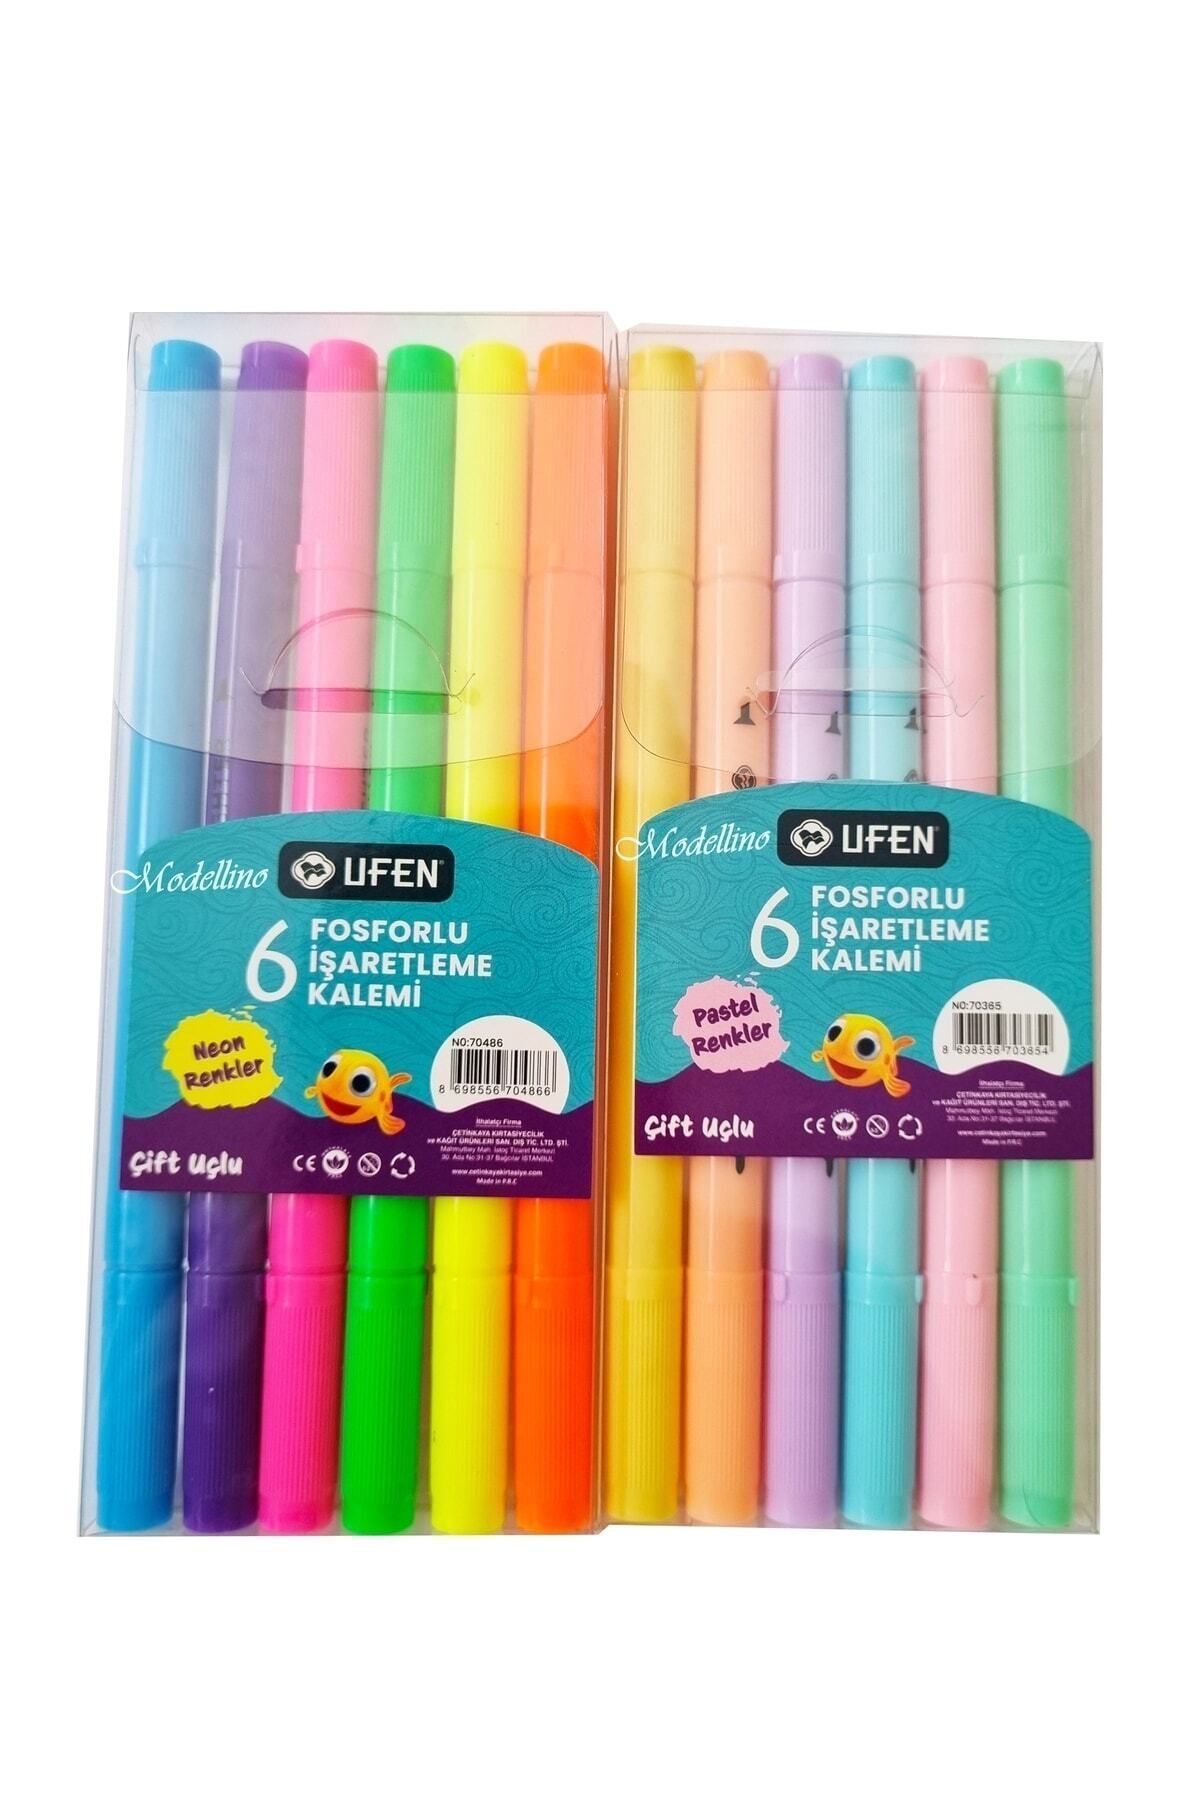 Modellino 12 Adet Çift Uçlu 6'lı Pastel & 6'lı Neon Renkler Ufen Fosforlu Kalem